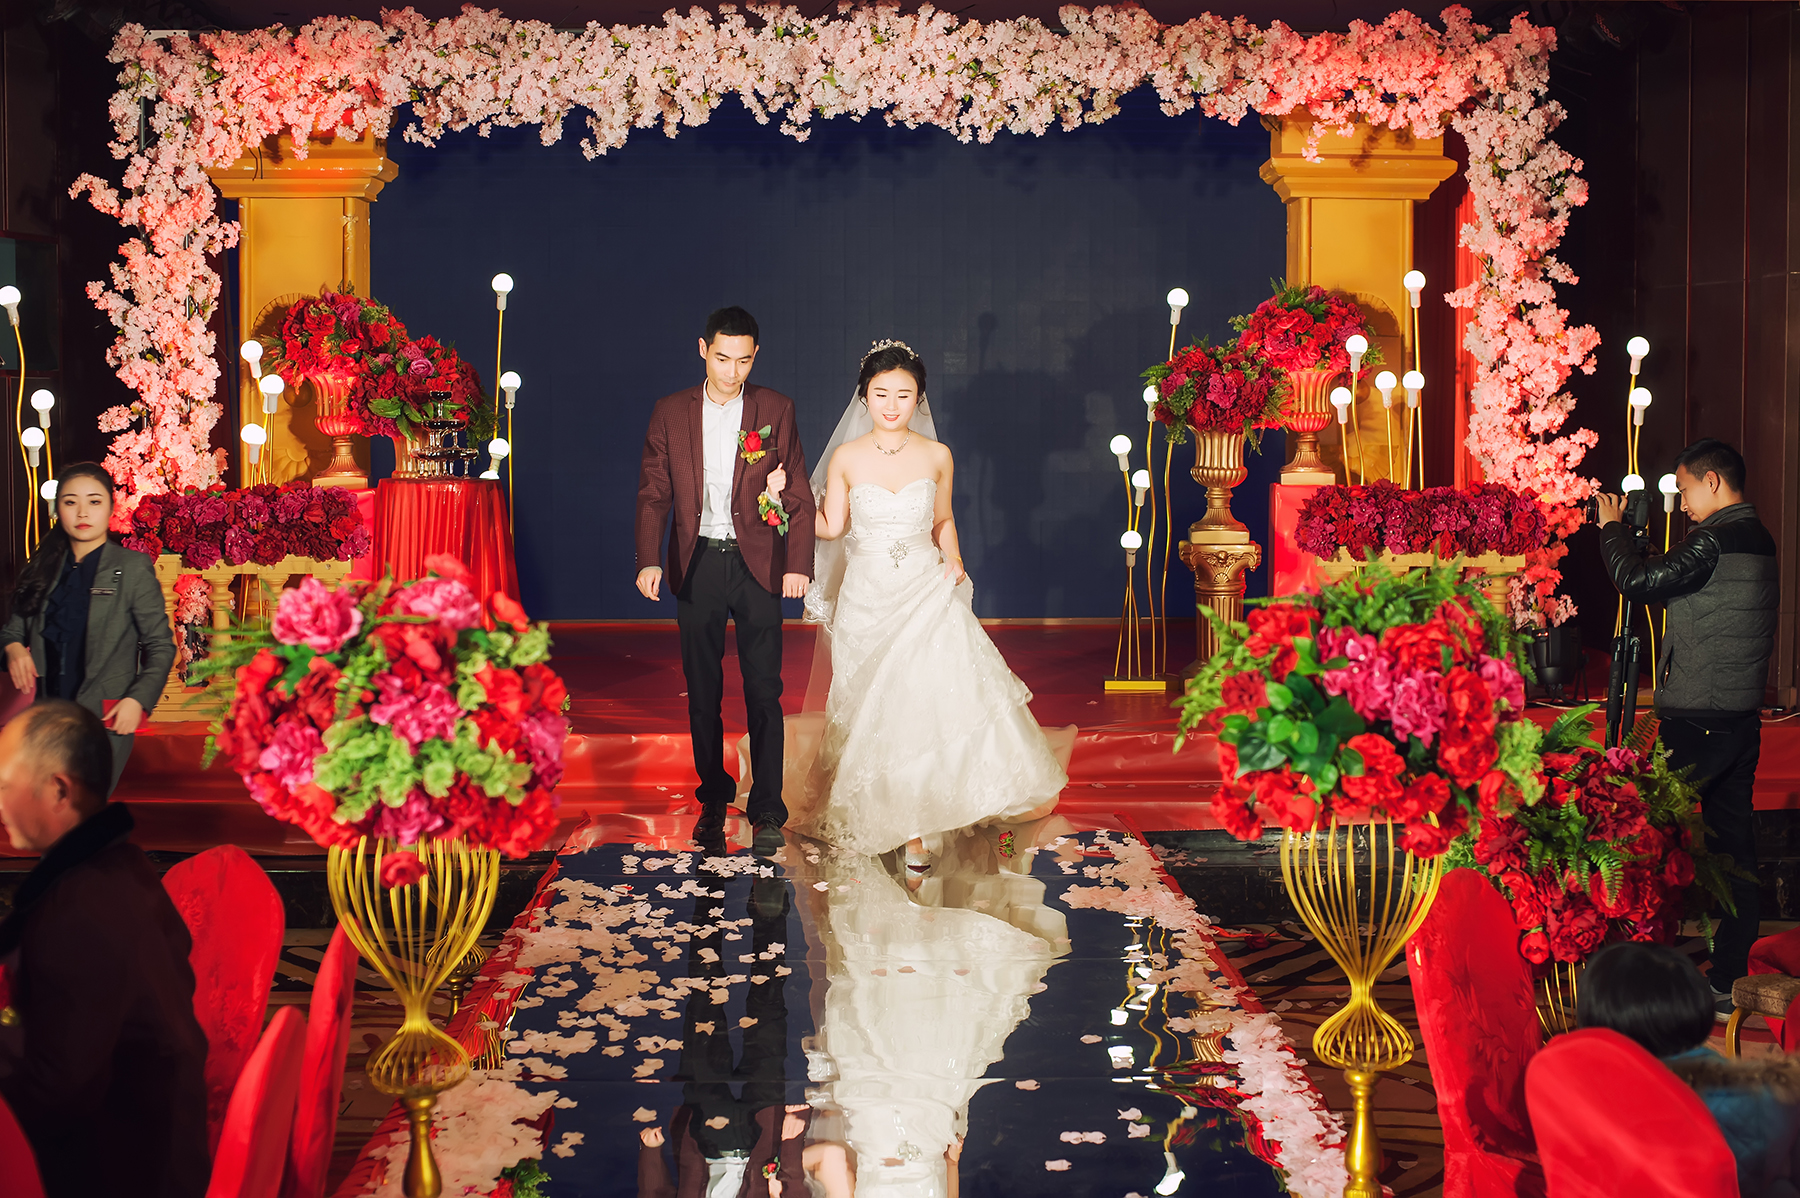 【小新婚禮視覺】單機-瑞河酒店 可愛的眉山新娘